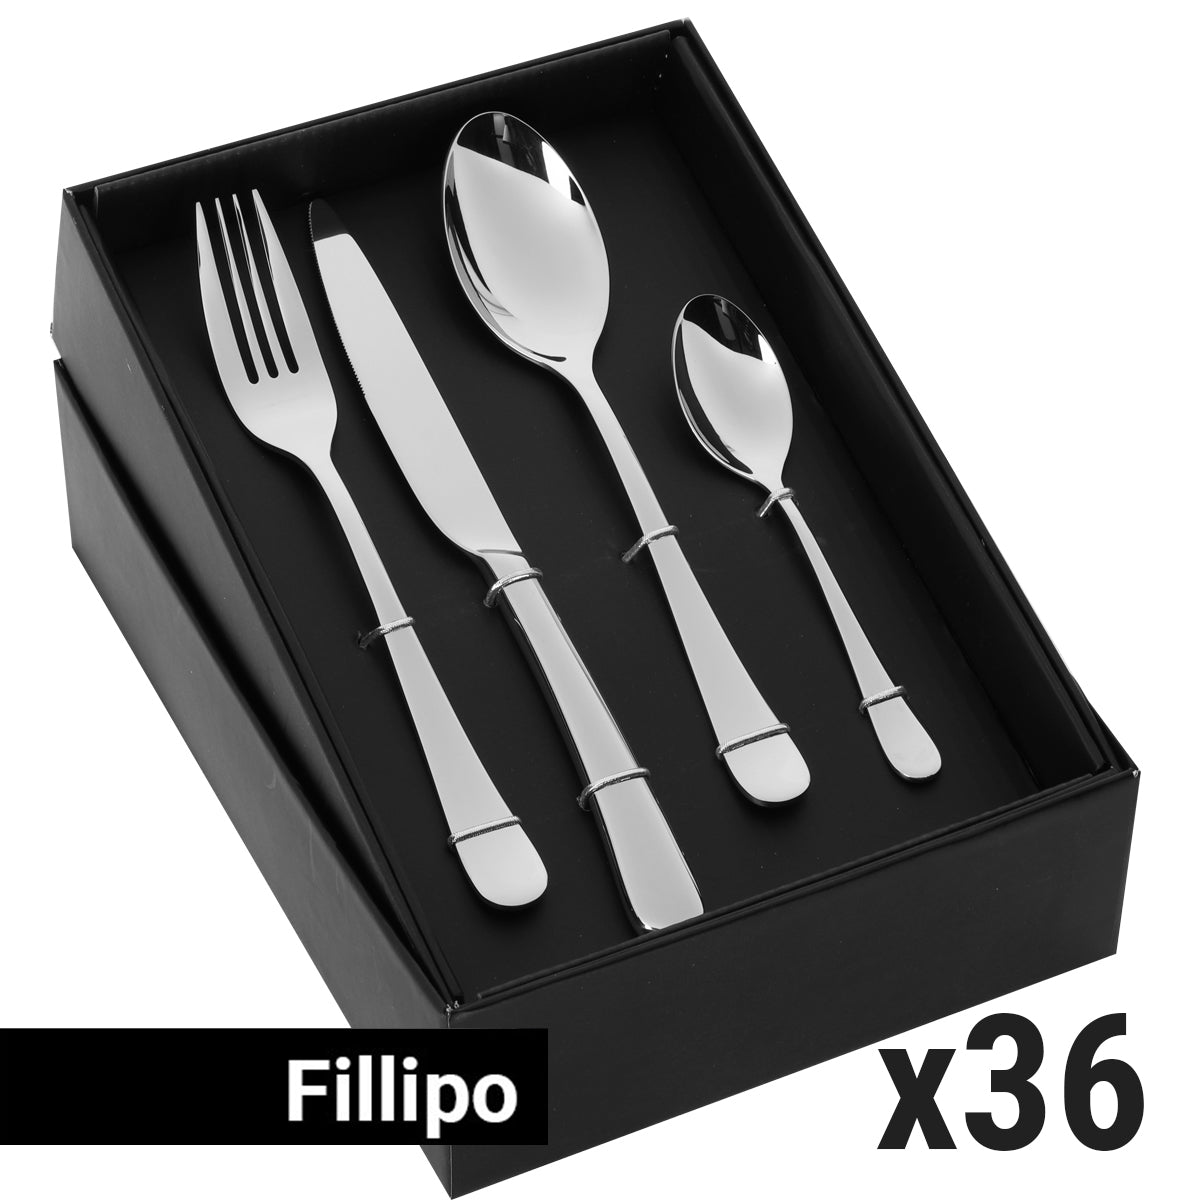 (144 броя) Комплект прибори за хранене Fillipo - 144 броя - За 36 души